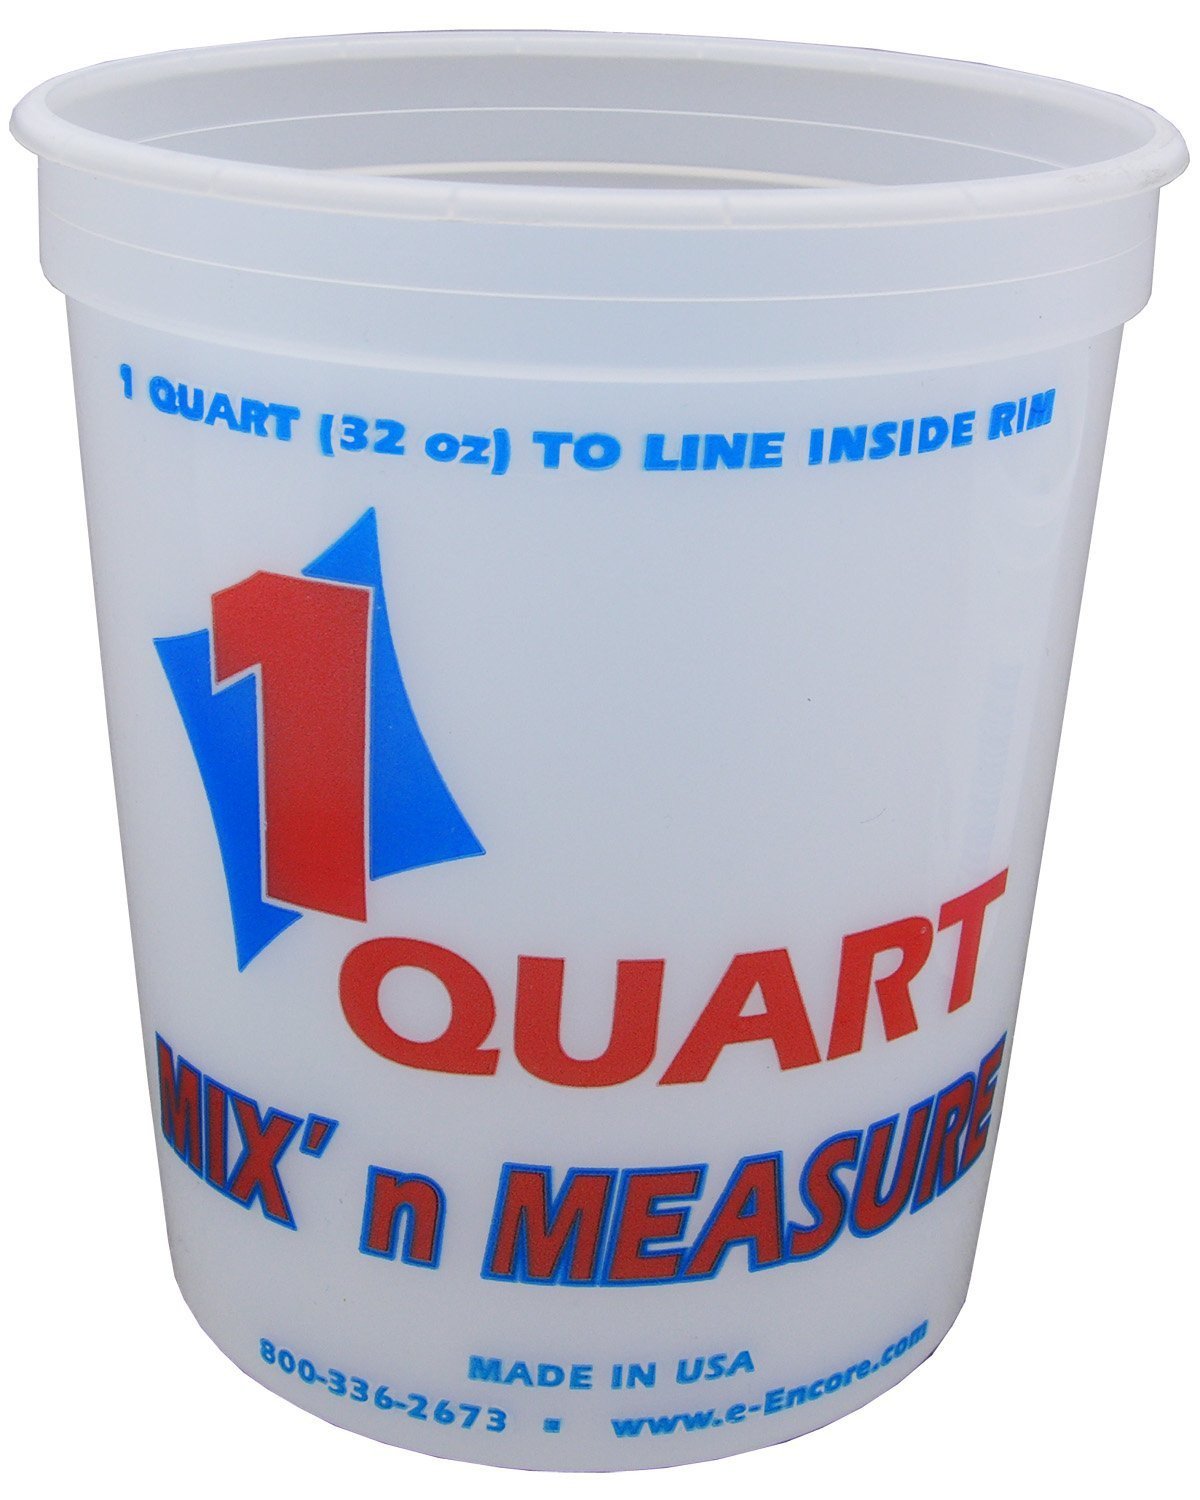 1 Quart Plastic Container 32 oz.